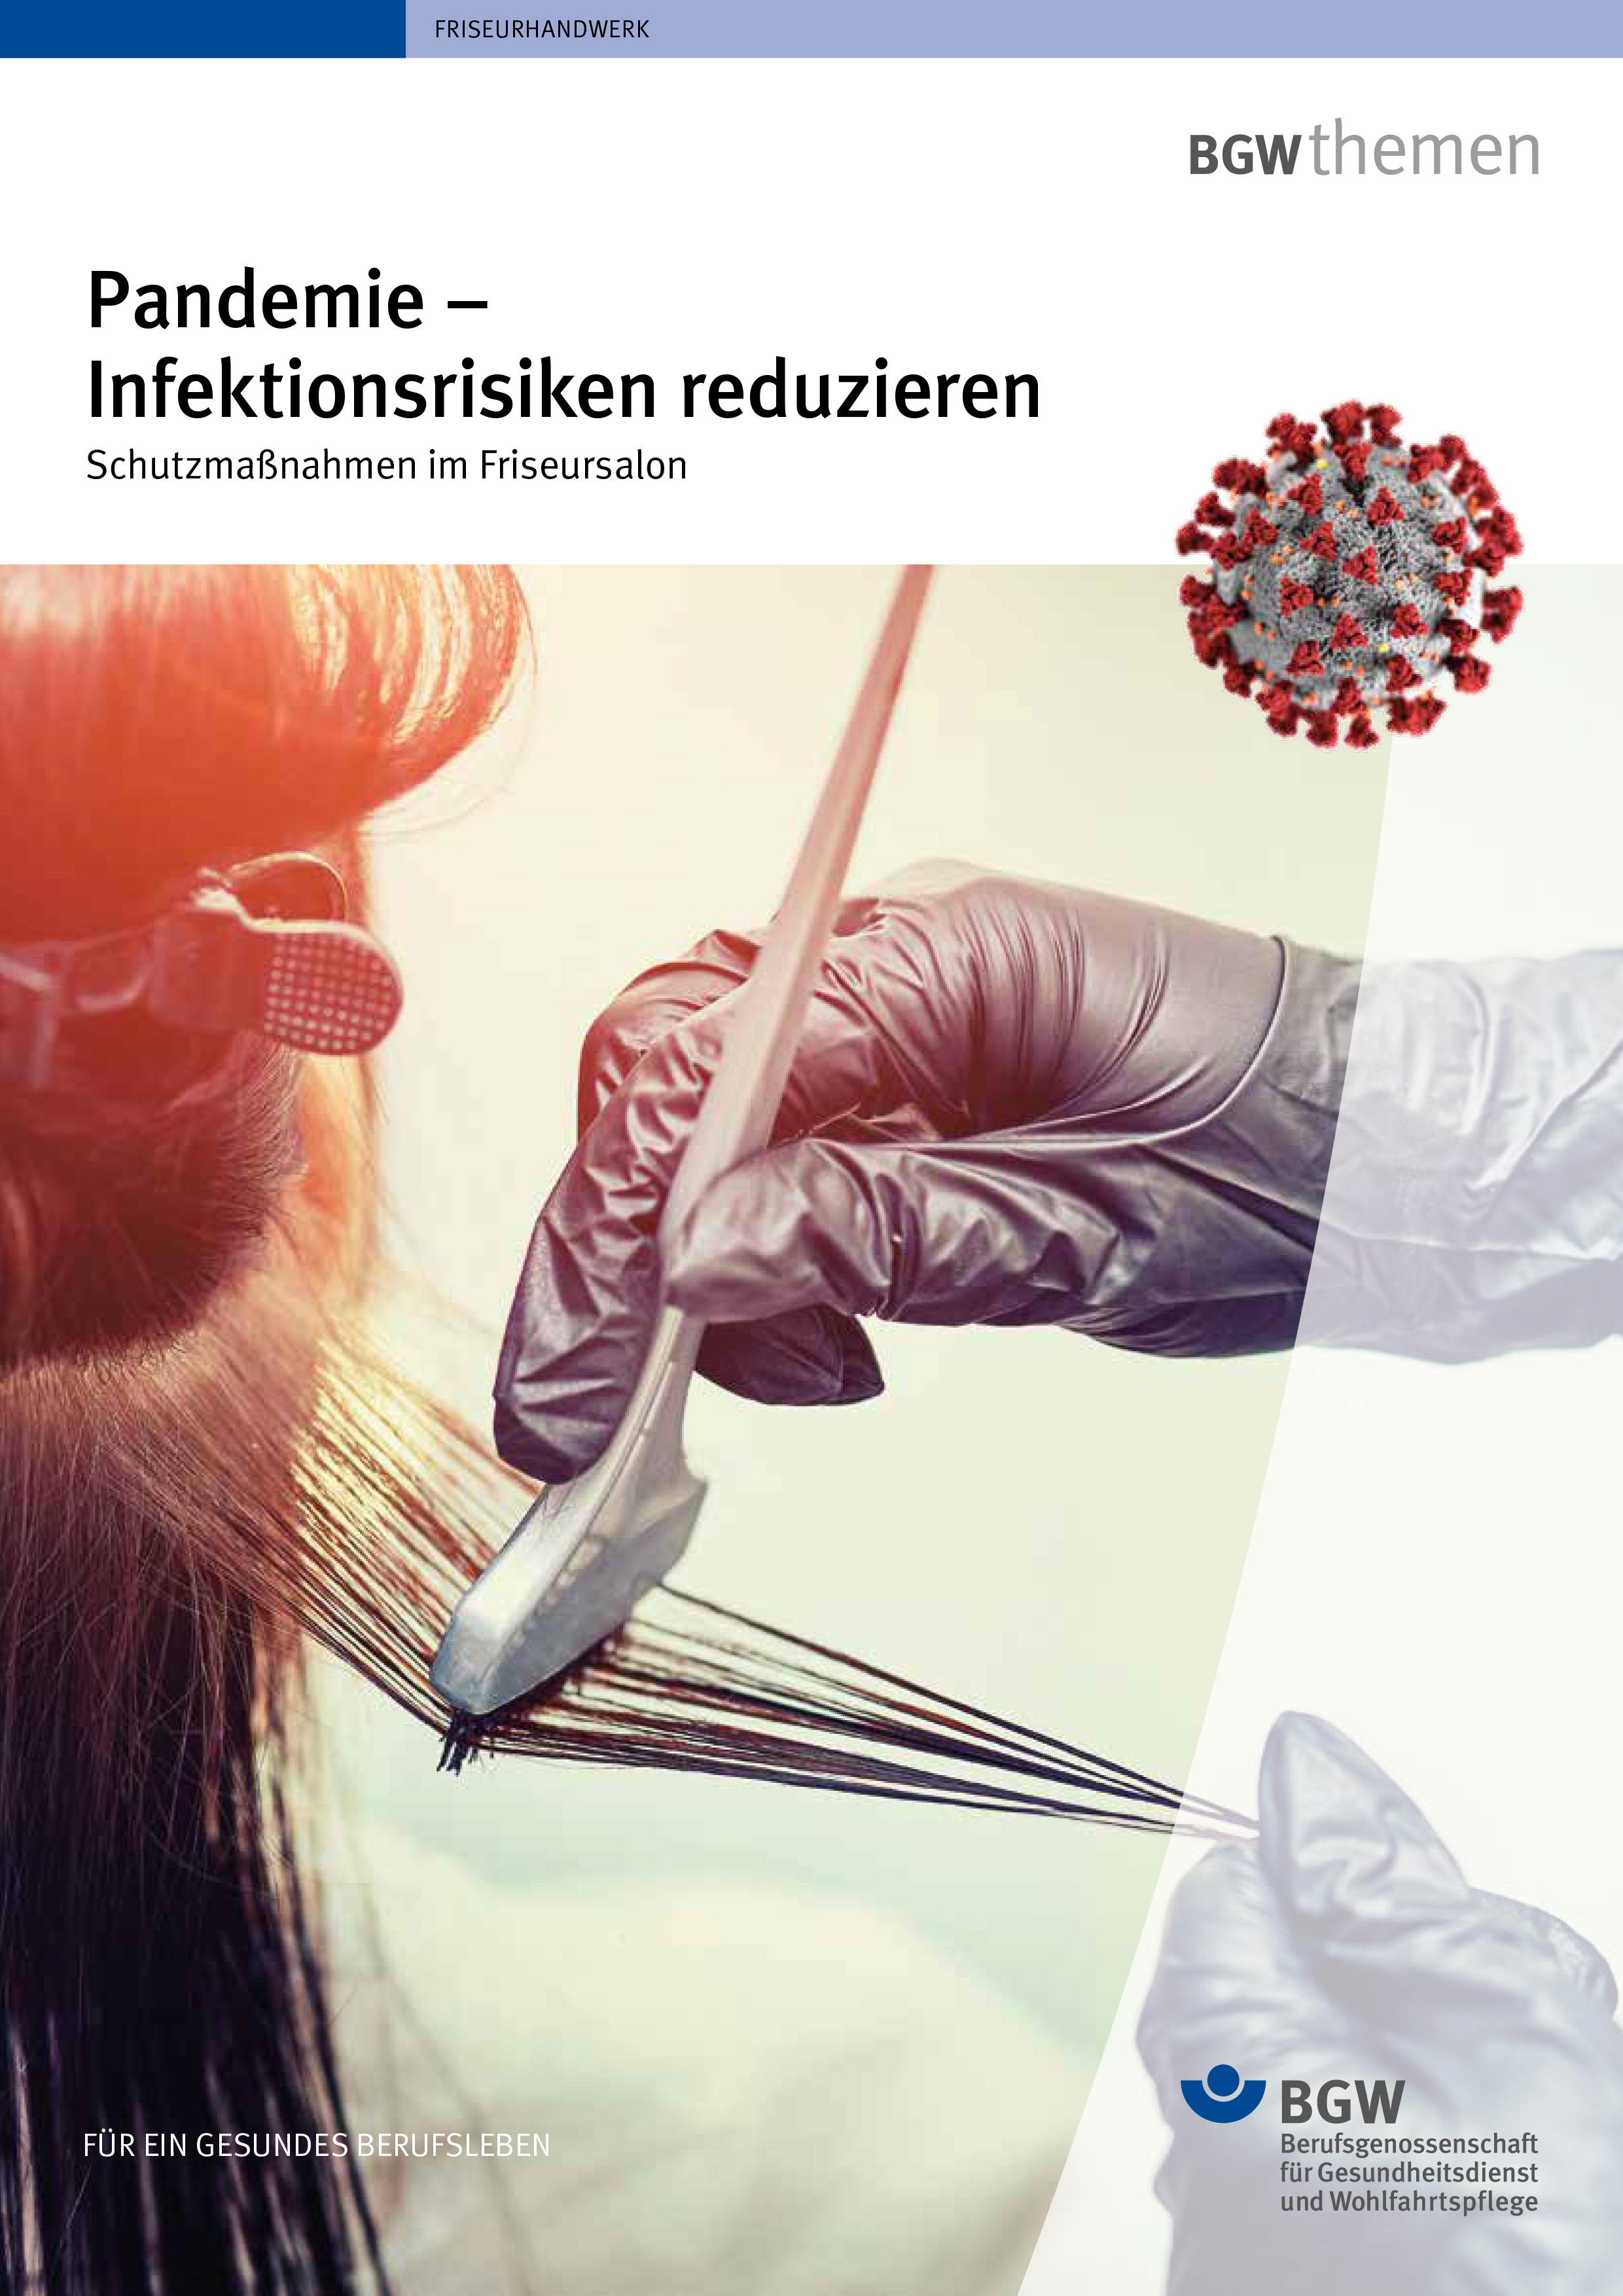 Titel des Aushangs "Pandemie - Infektionsrisiken reduzieren" - Hände mit Einmalhandschuhen färben Haarsträhnen